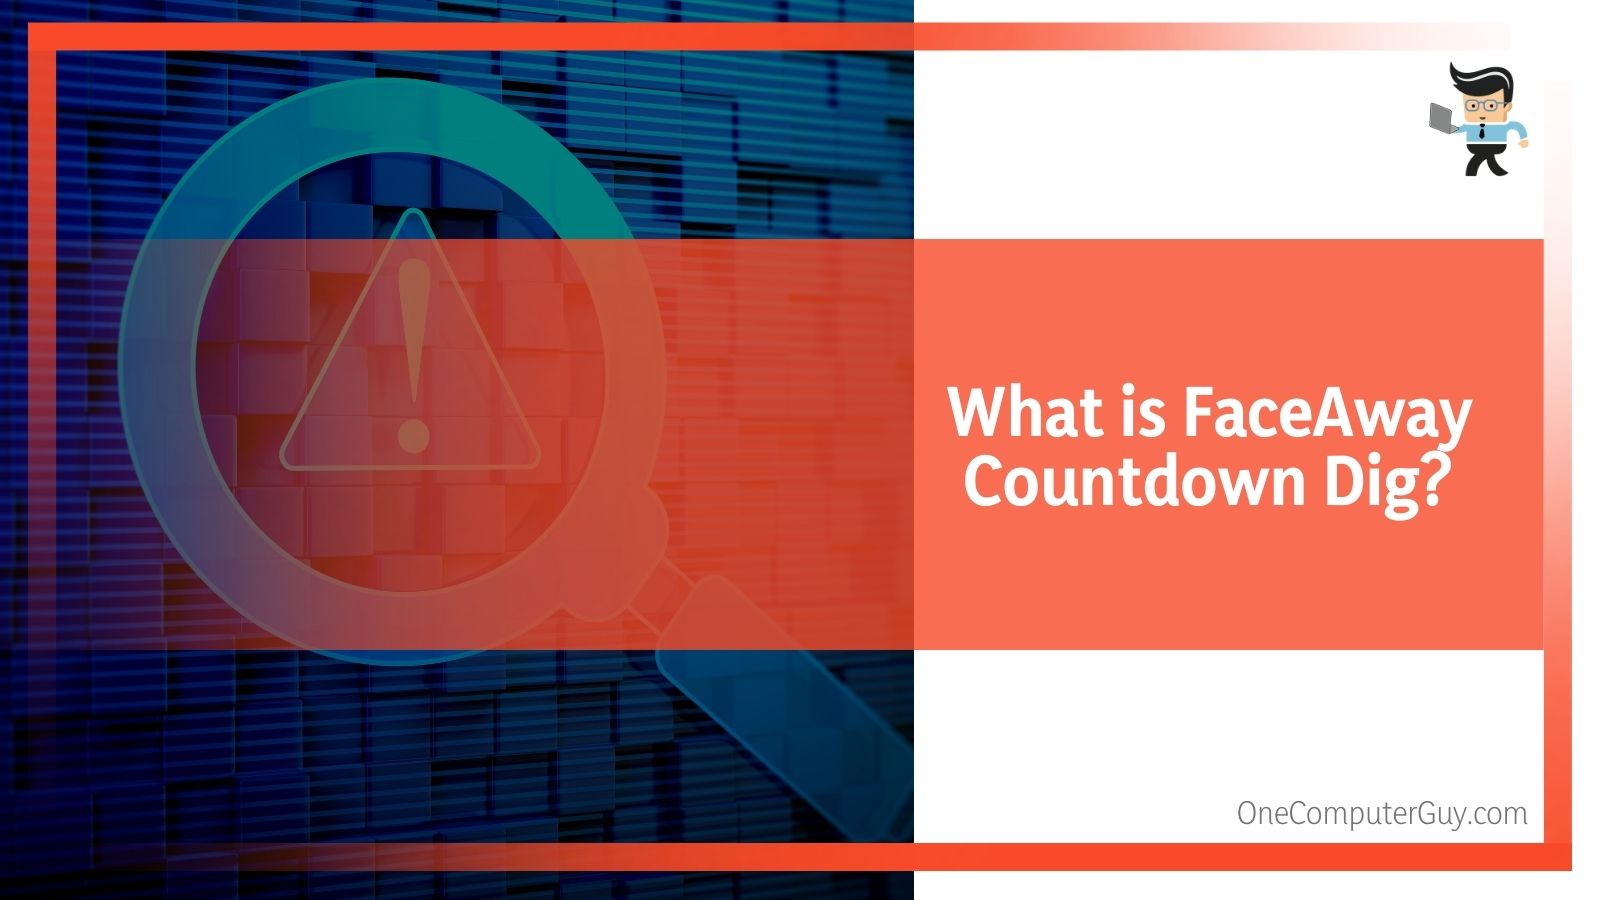 What is FaceAway Countdown Dig